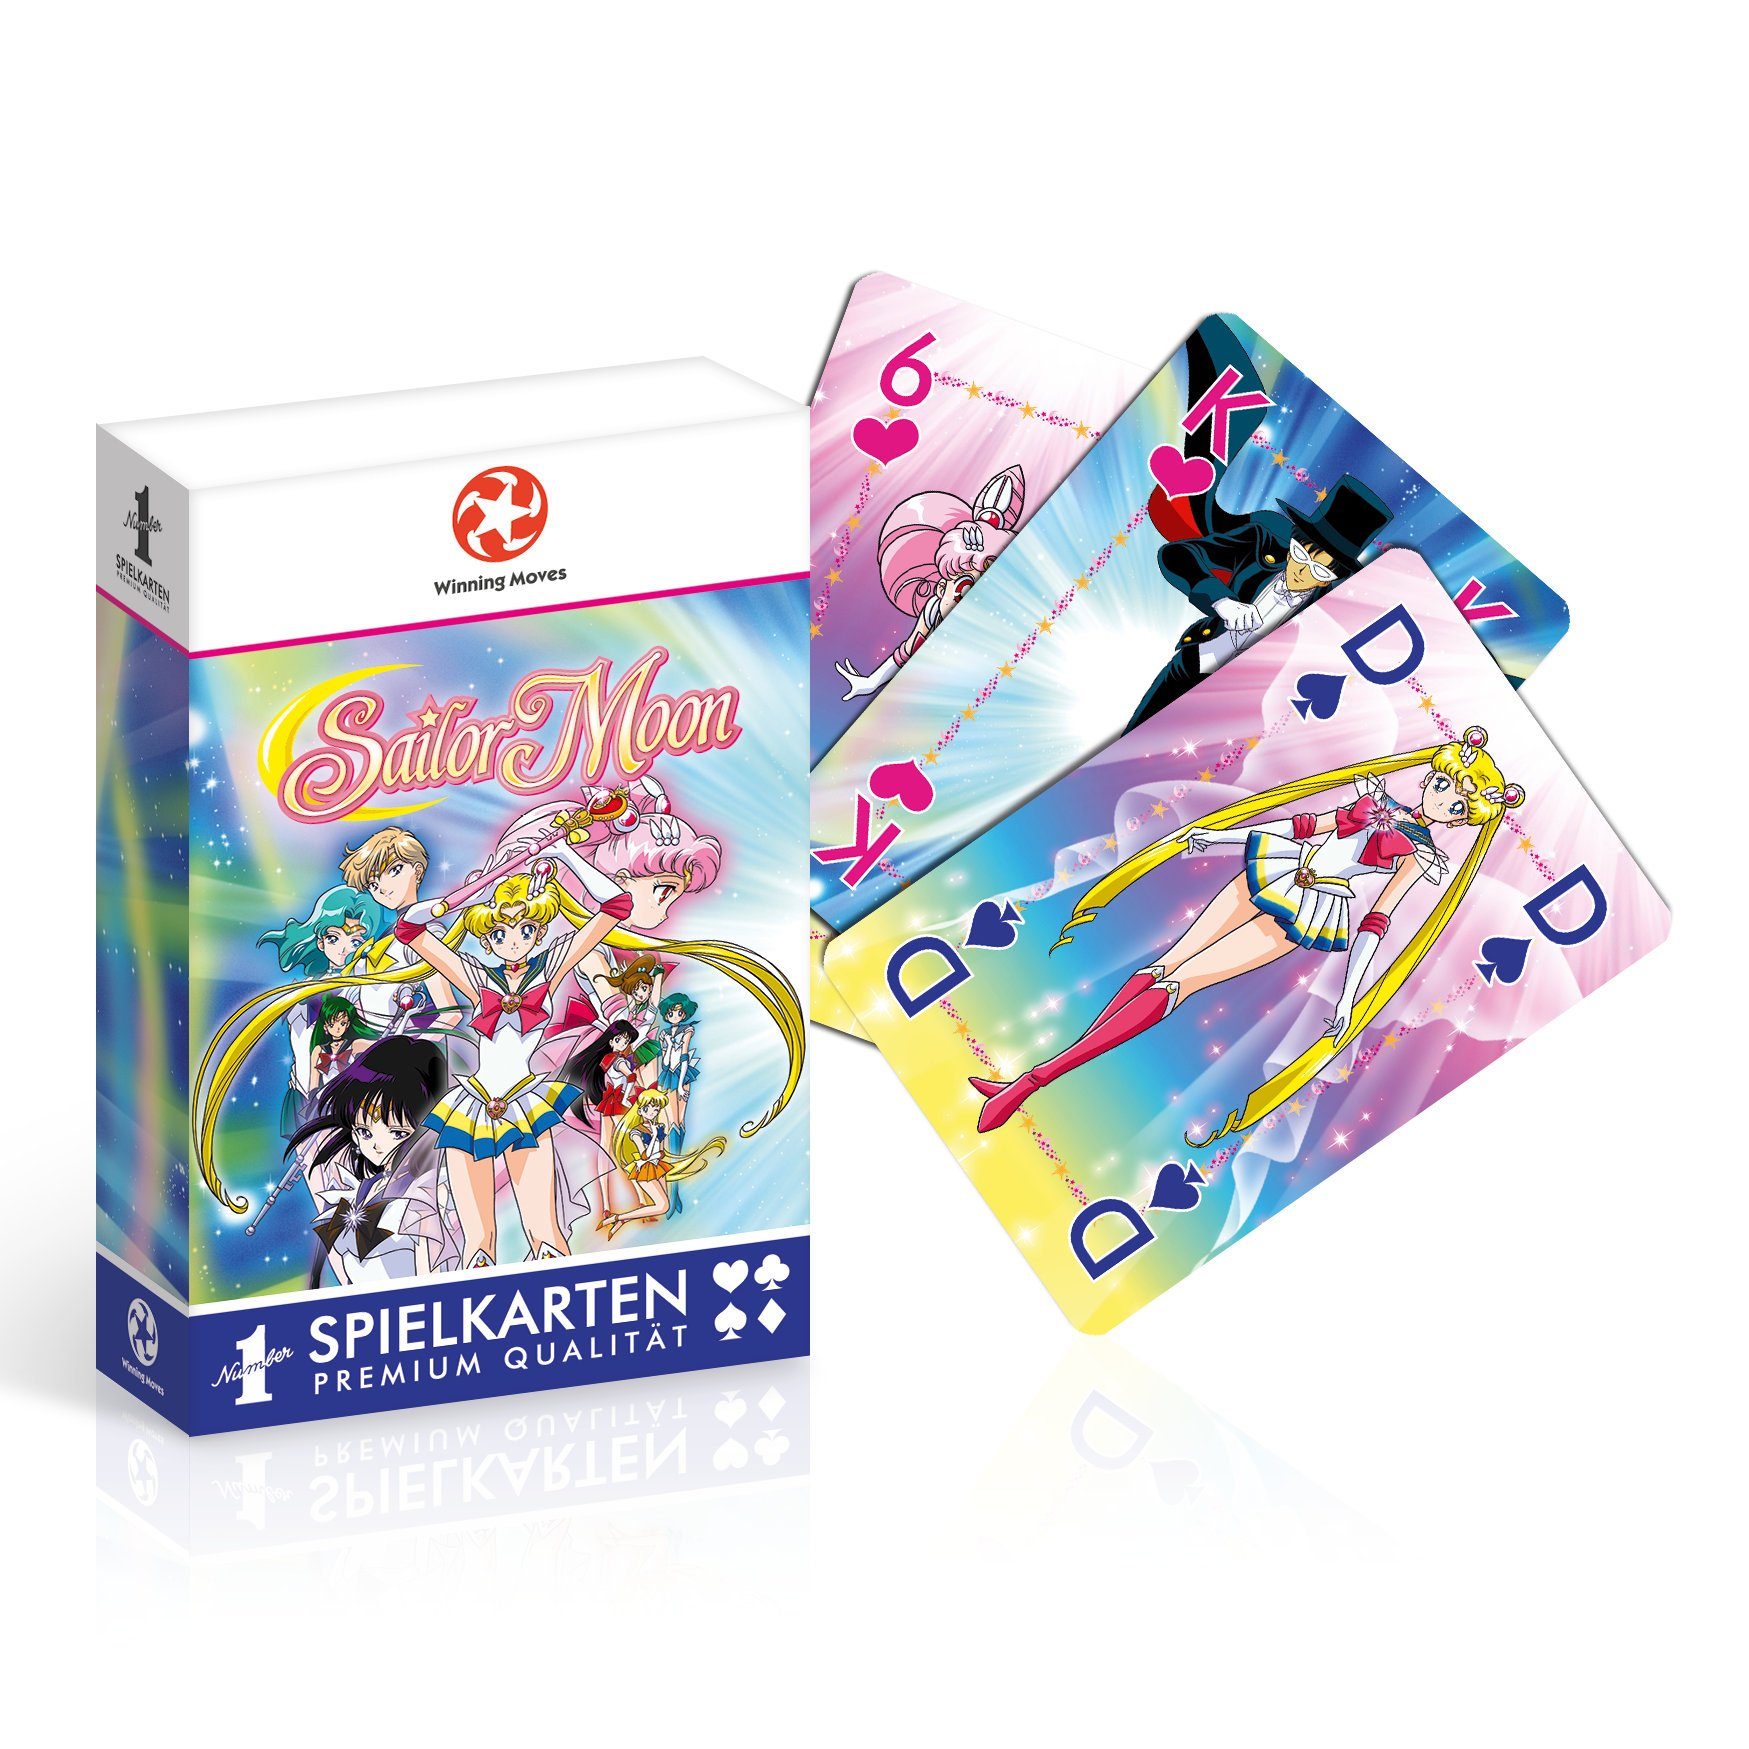 Sailor Kartenspiel Winning Moon, Spielkarten Spiel, 2 Joker inkl. 1 Number Moves